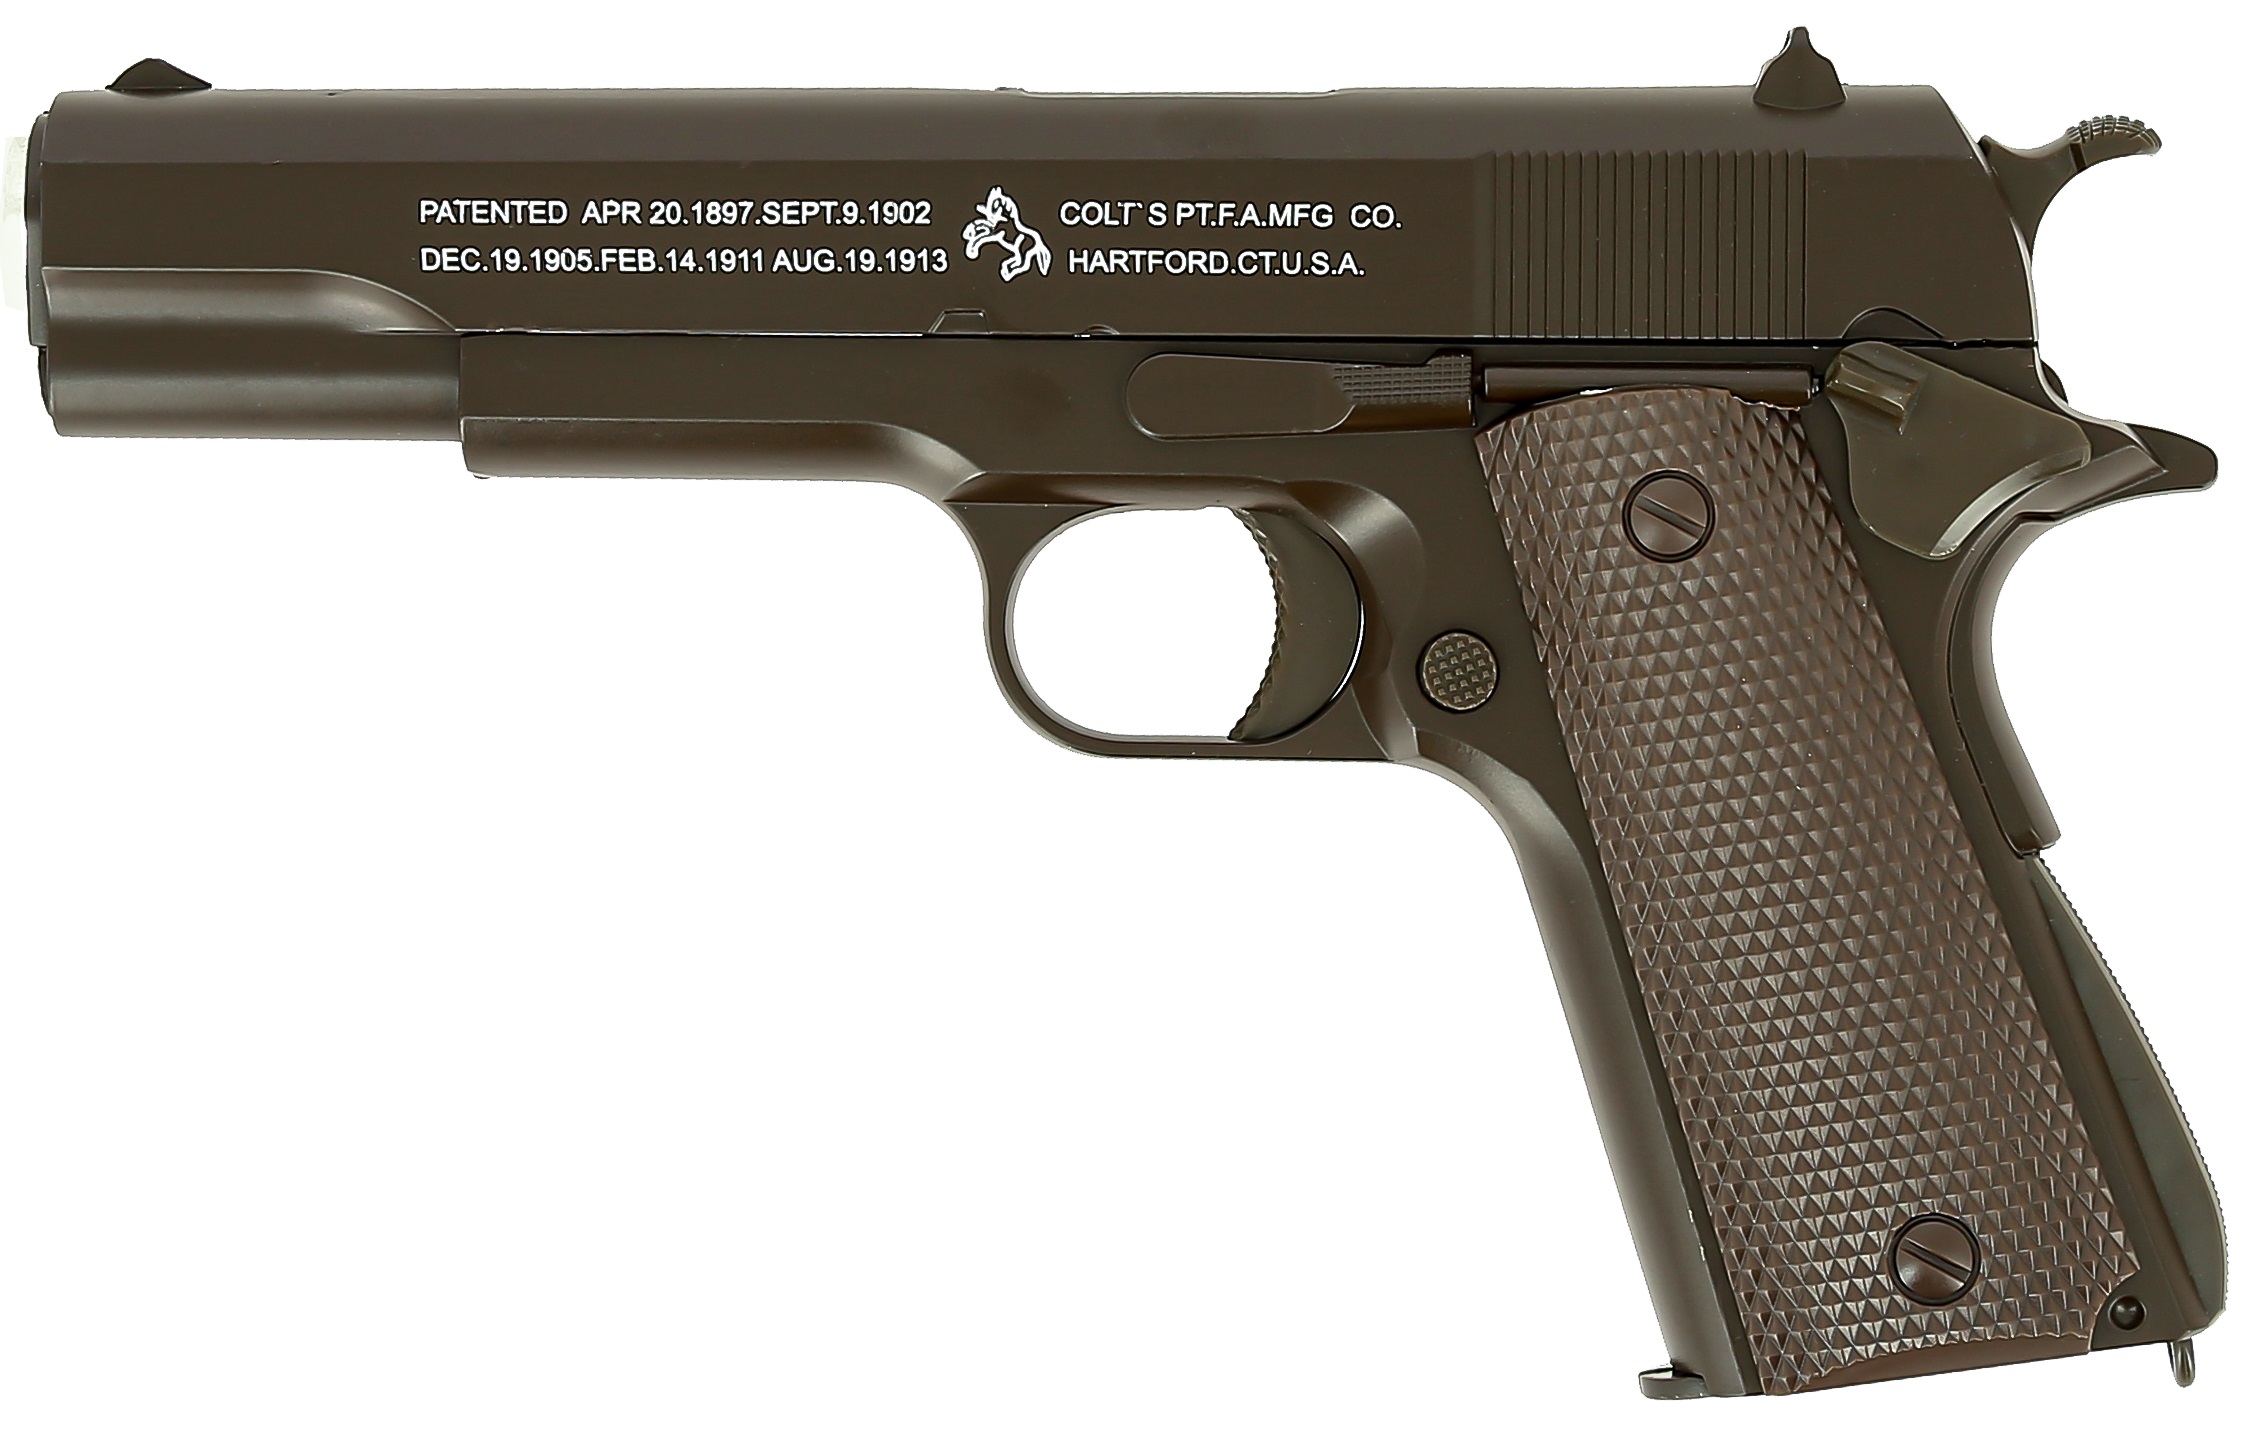    Colt S P.T.F.A.MFG CO. HARTFORD.CT.U.S.A.,  20 . # 1 hobbyplus.ru